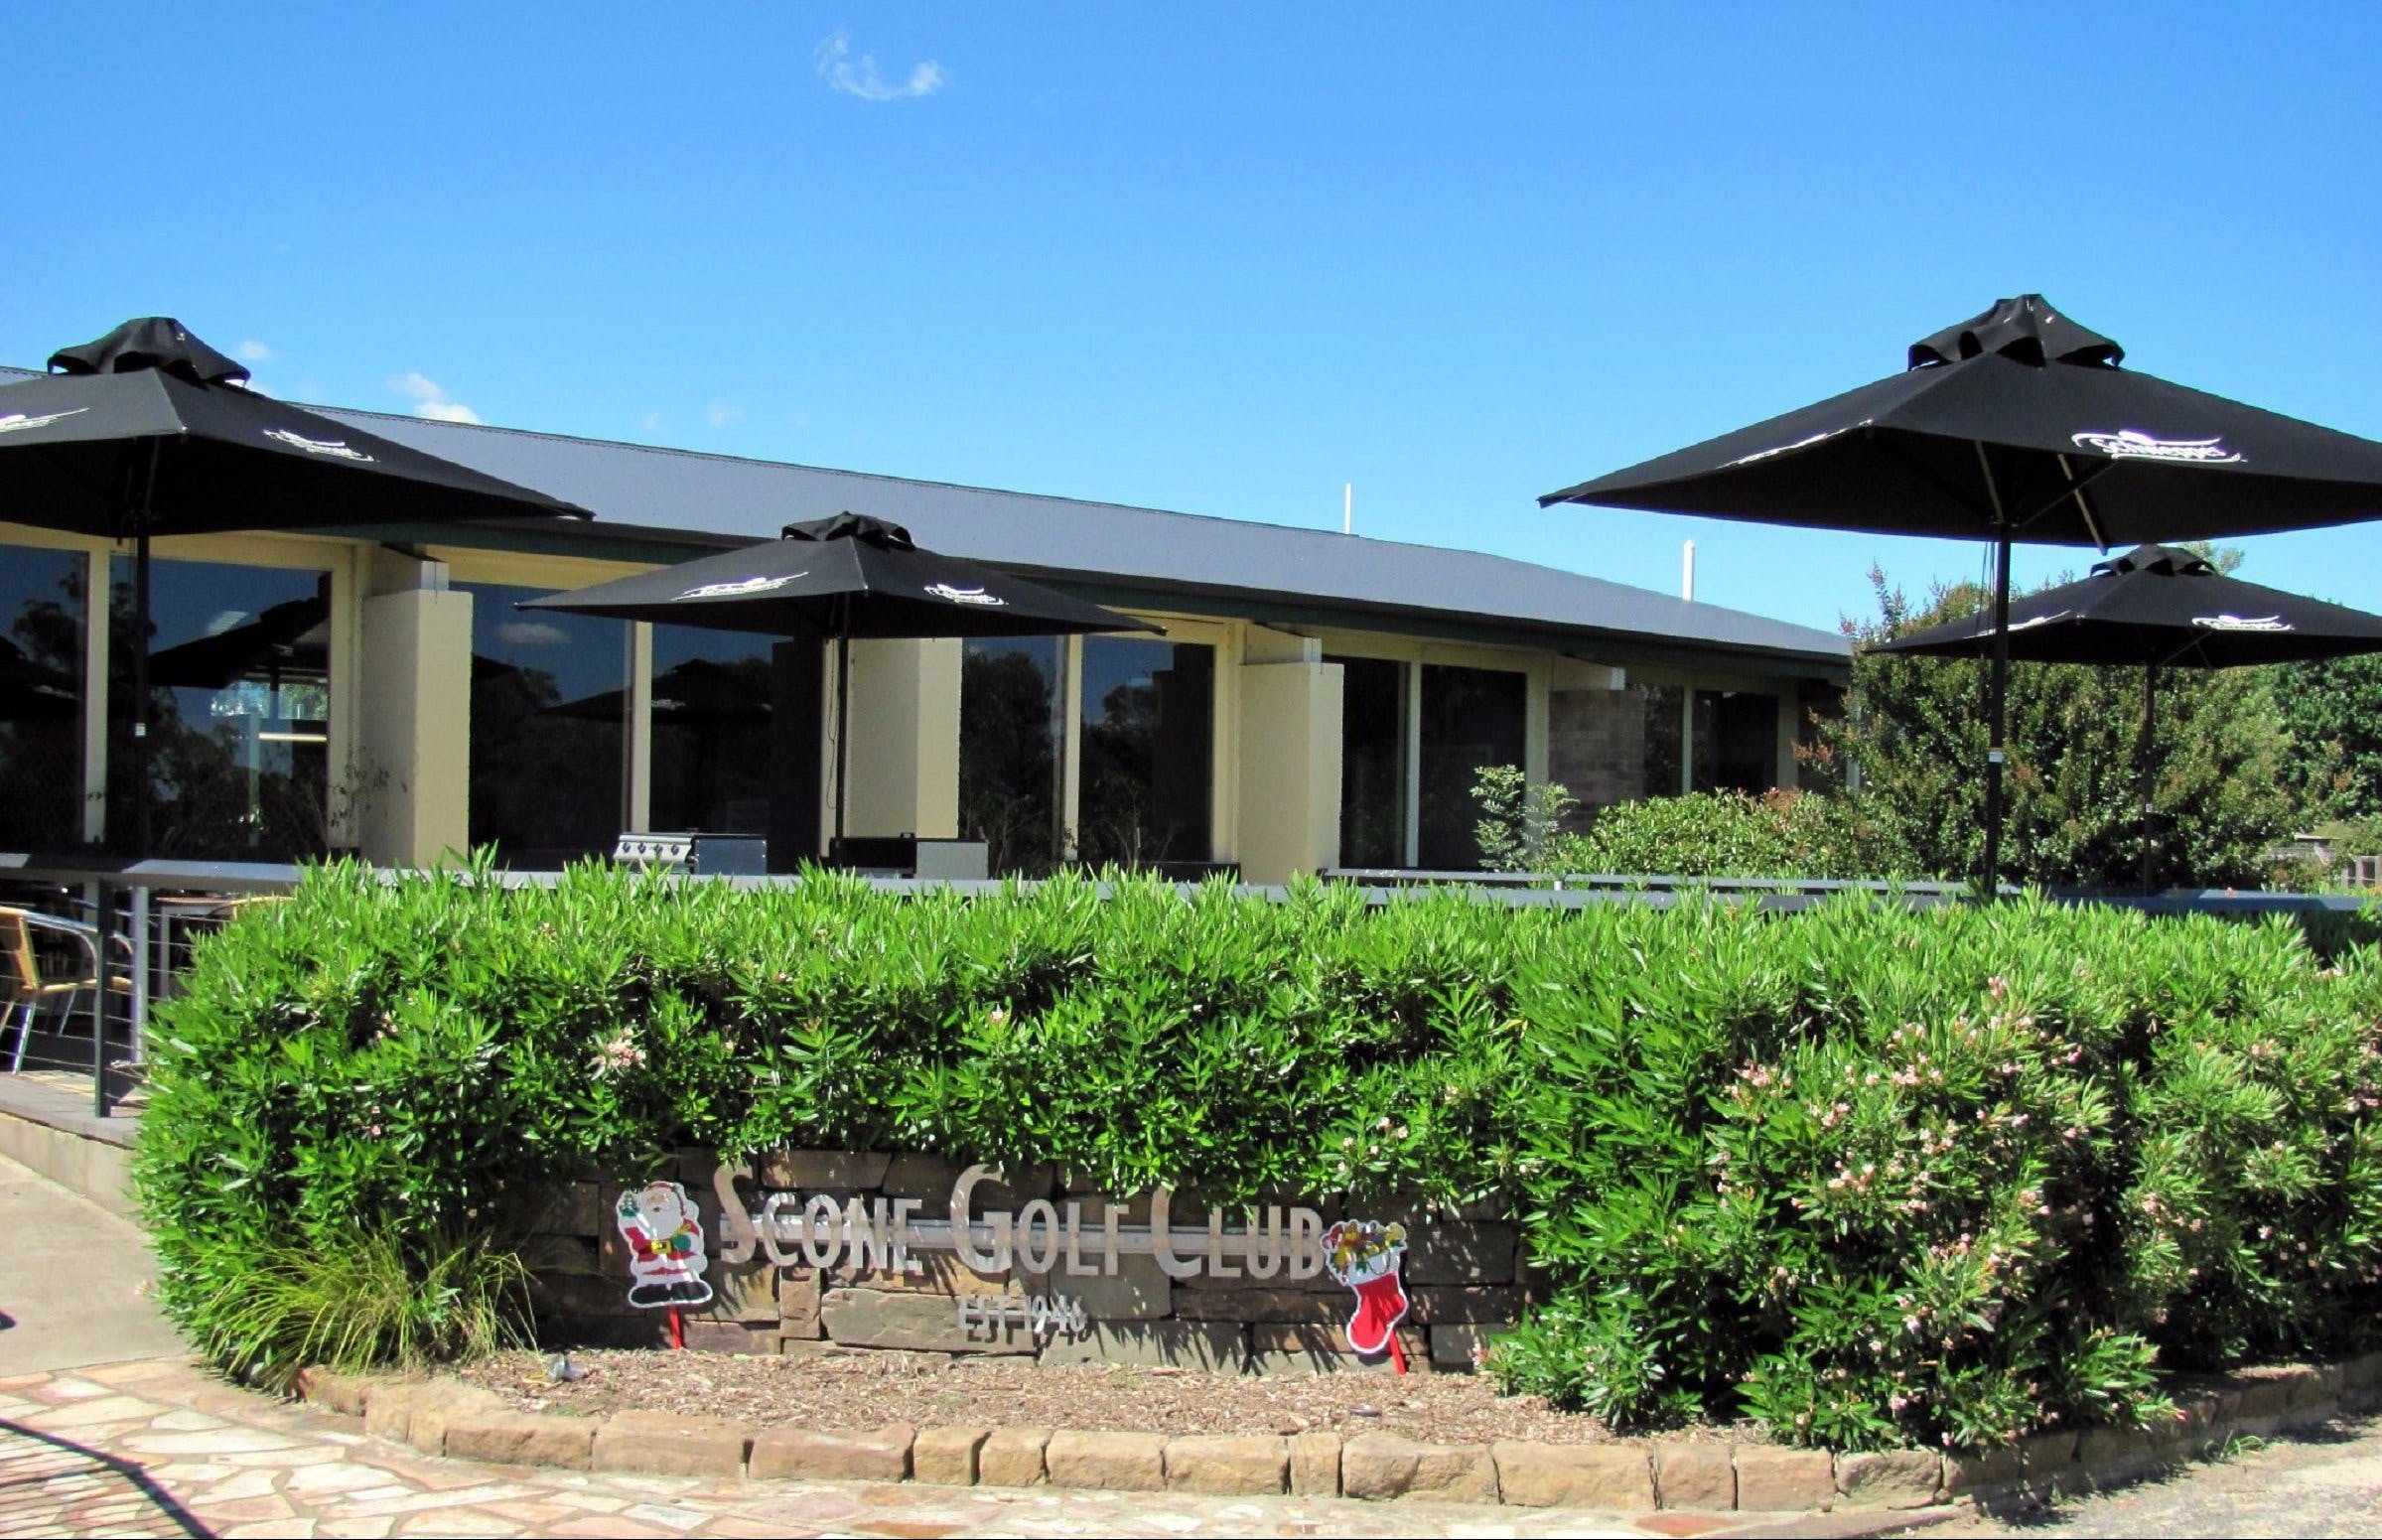 Scone Golf Club - Accommodation in Brisbane